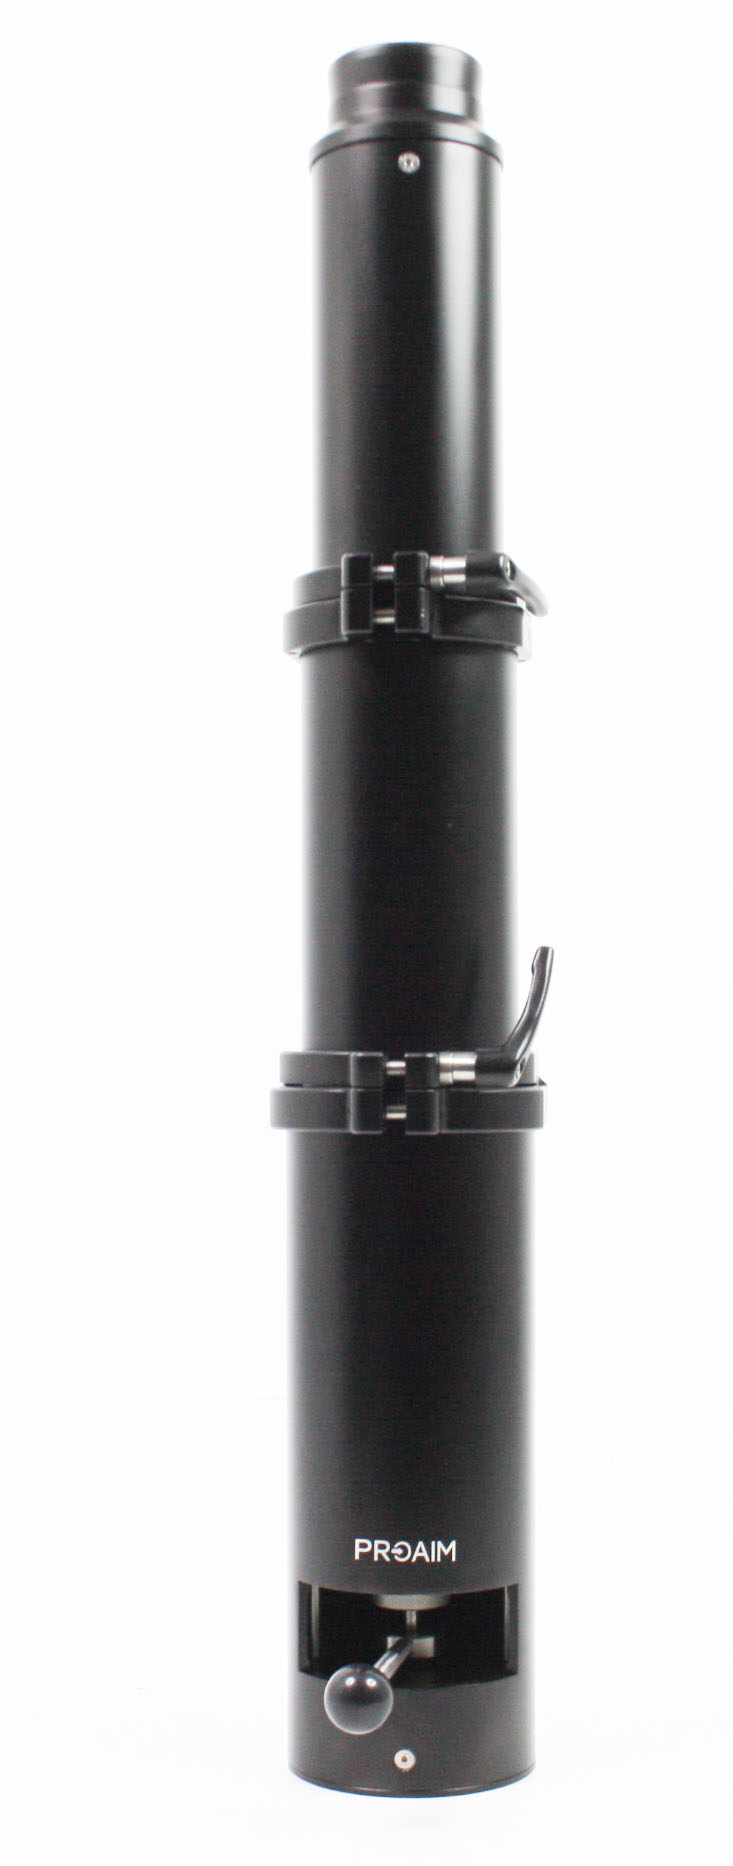 PROAIM Bull Bazooka Telescopico con Sollevamento a Gas per Telecamere Dolly Jib/Crane, 18-34